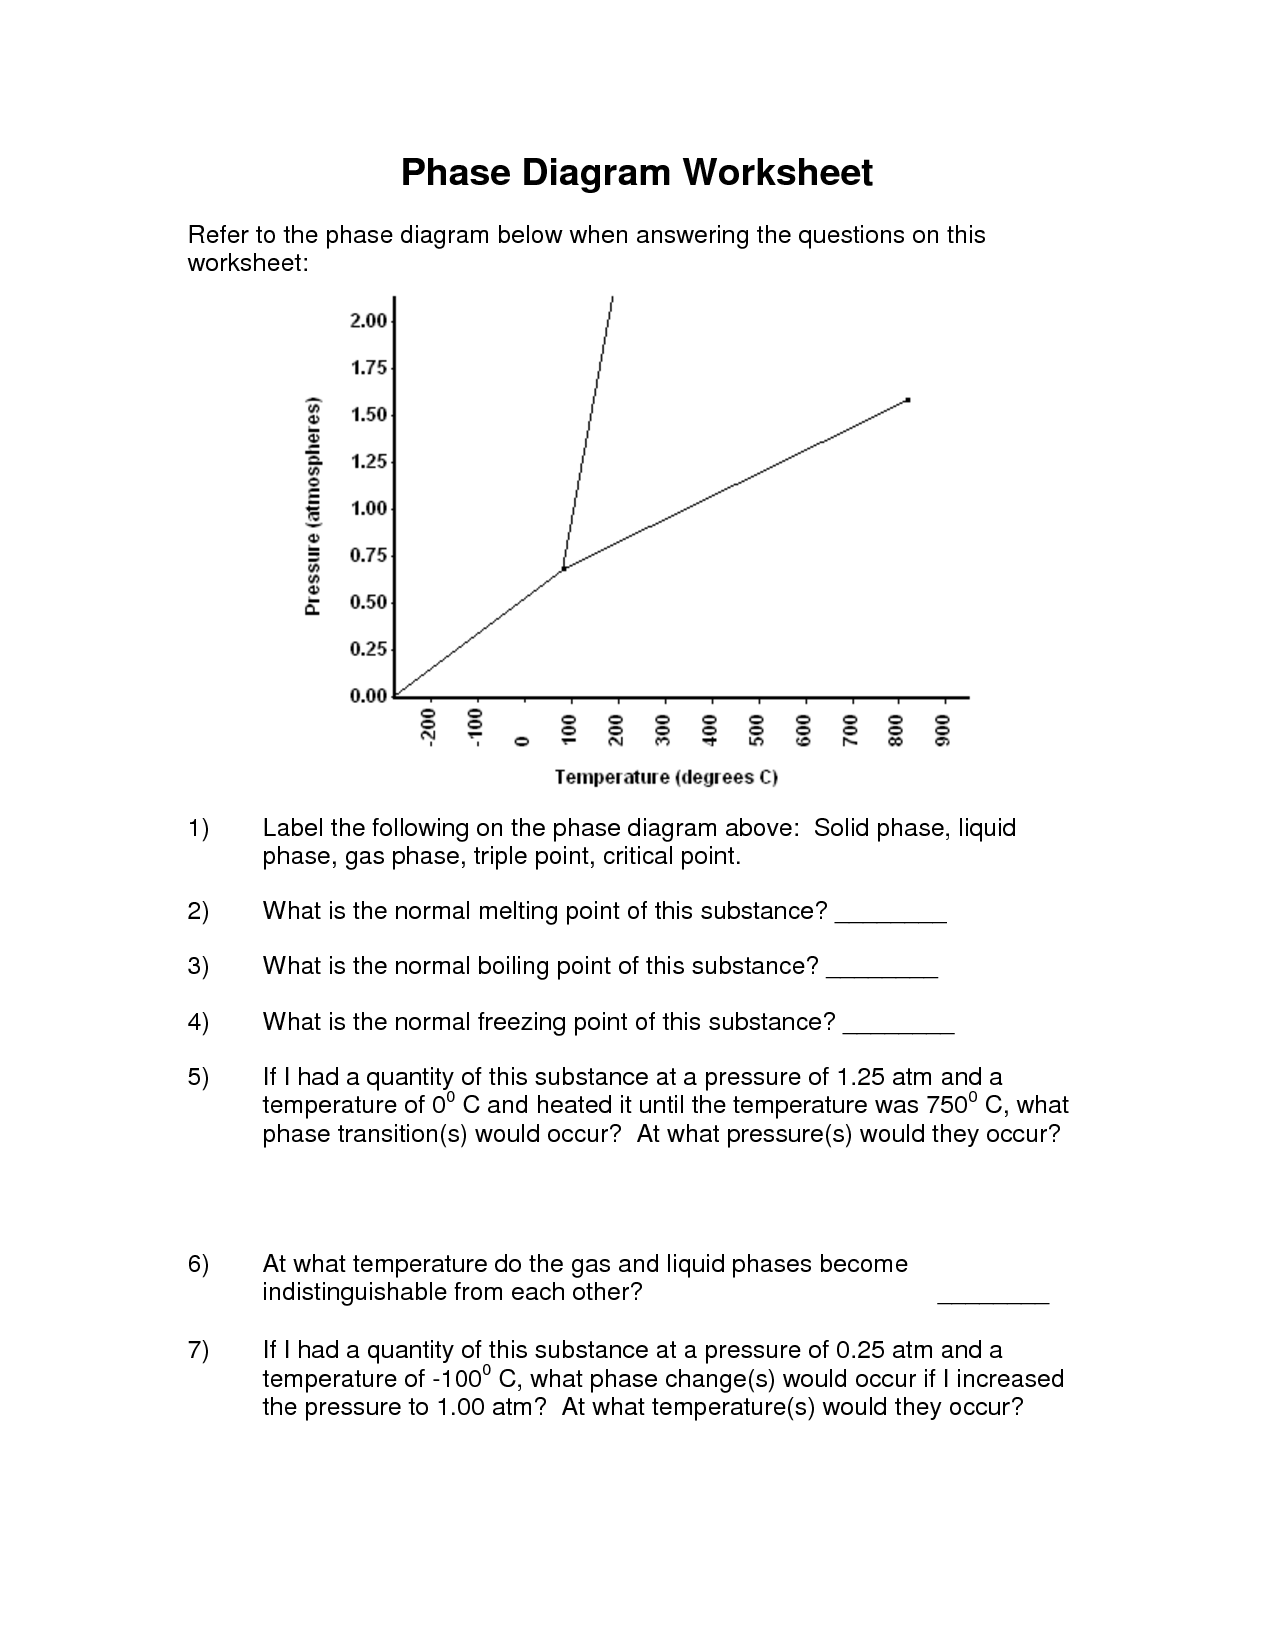 Phase Diagram Worksheet Answer Key Image